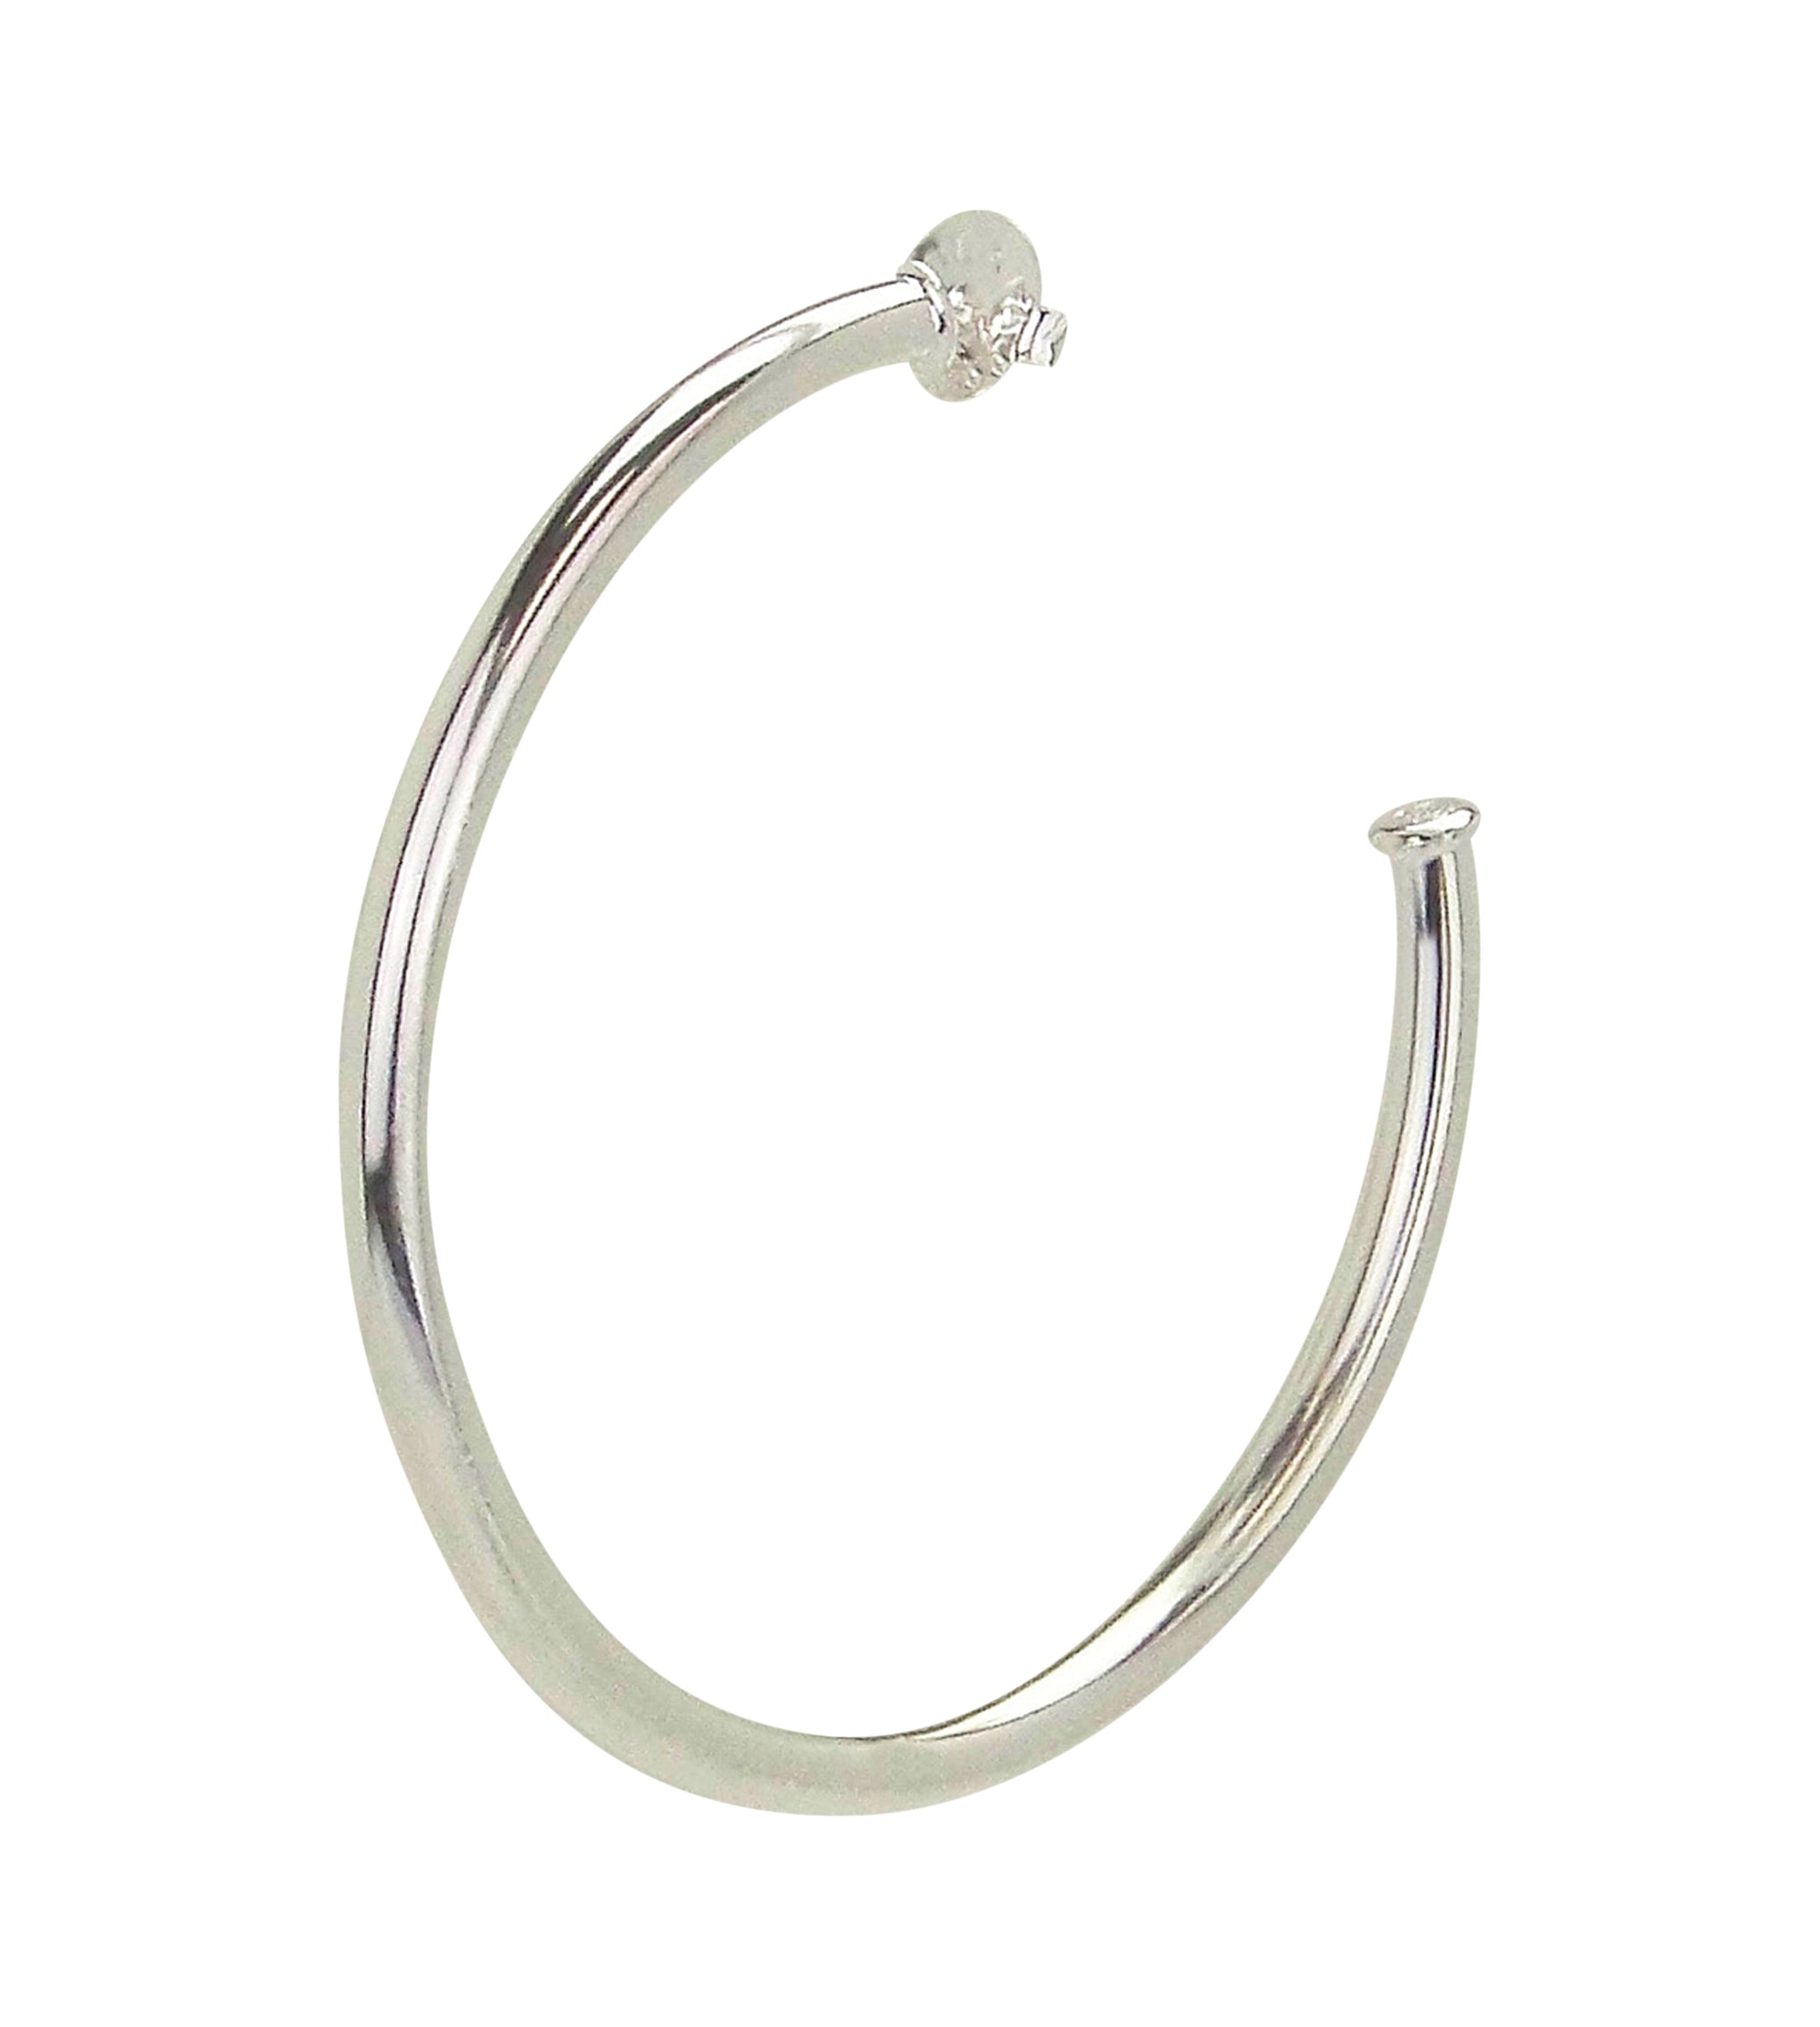 Sheila Fajl 2.25 Inch Everybody's Favorite Hoop Earrings in Polished Silver